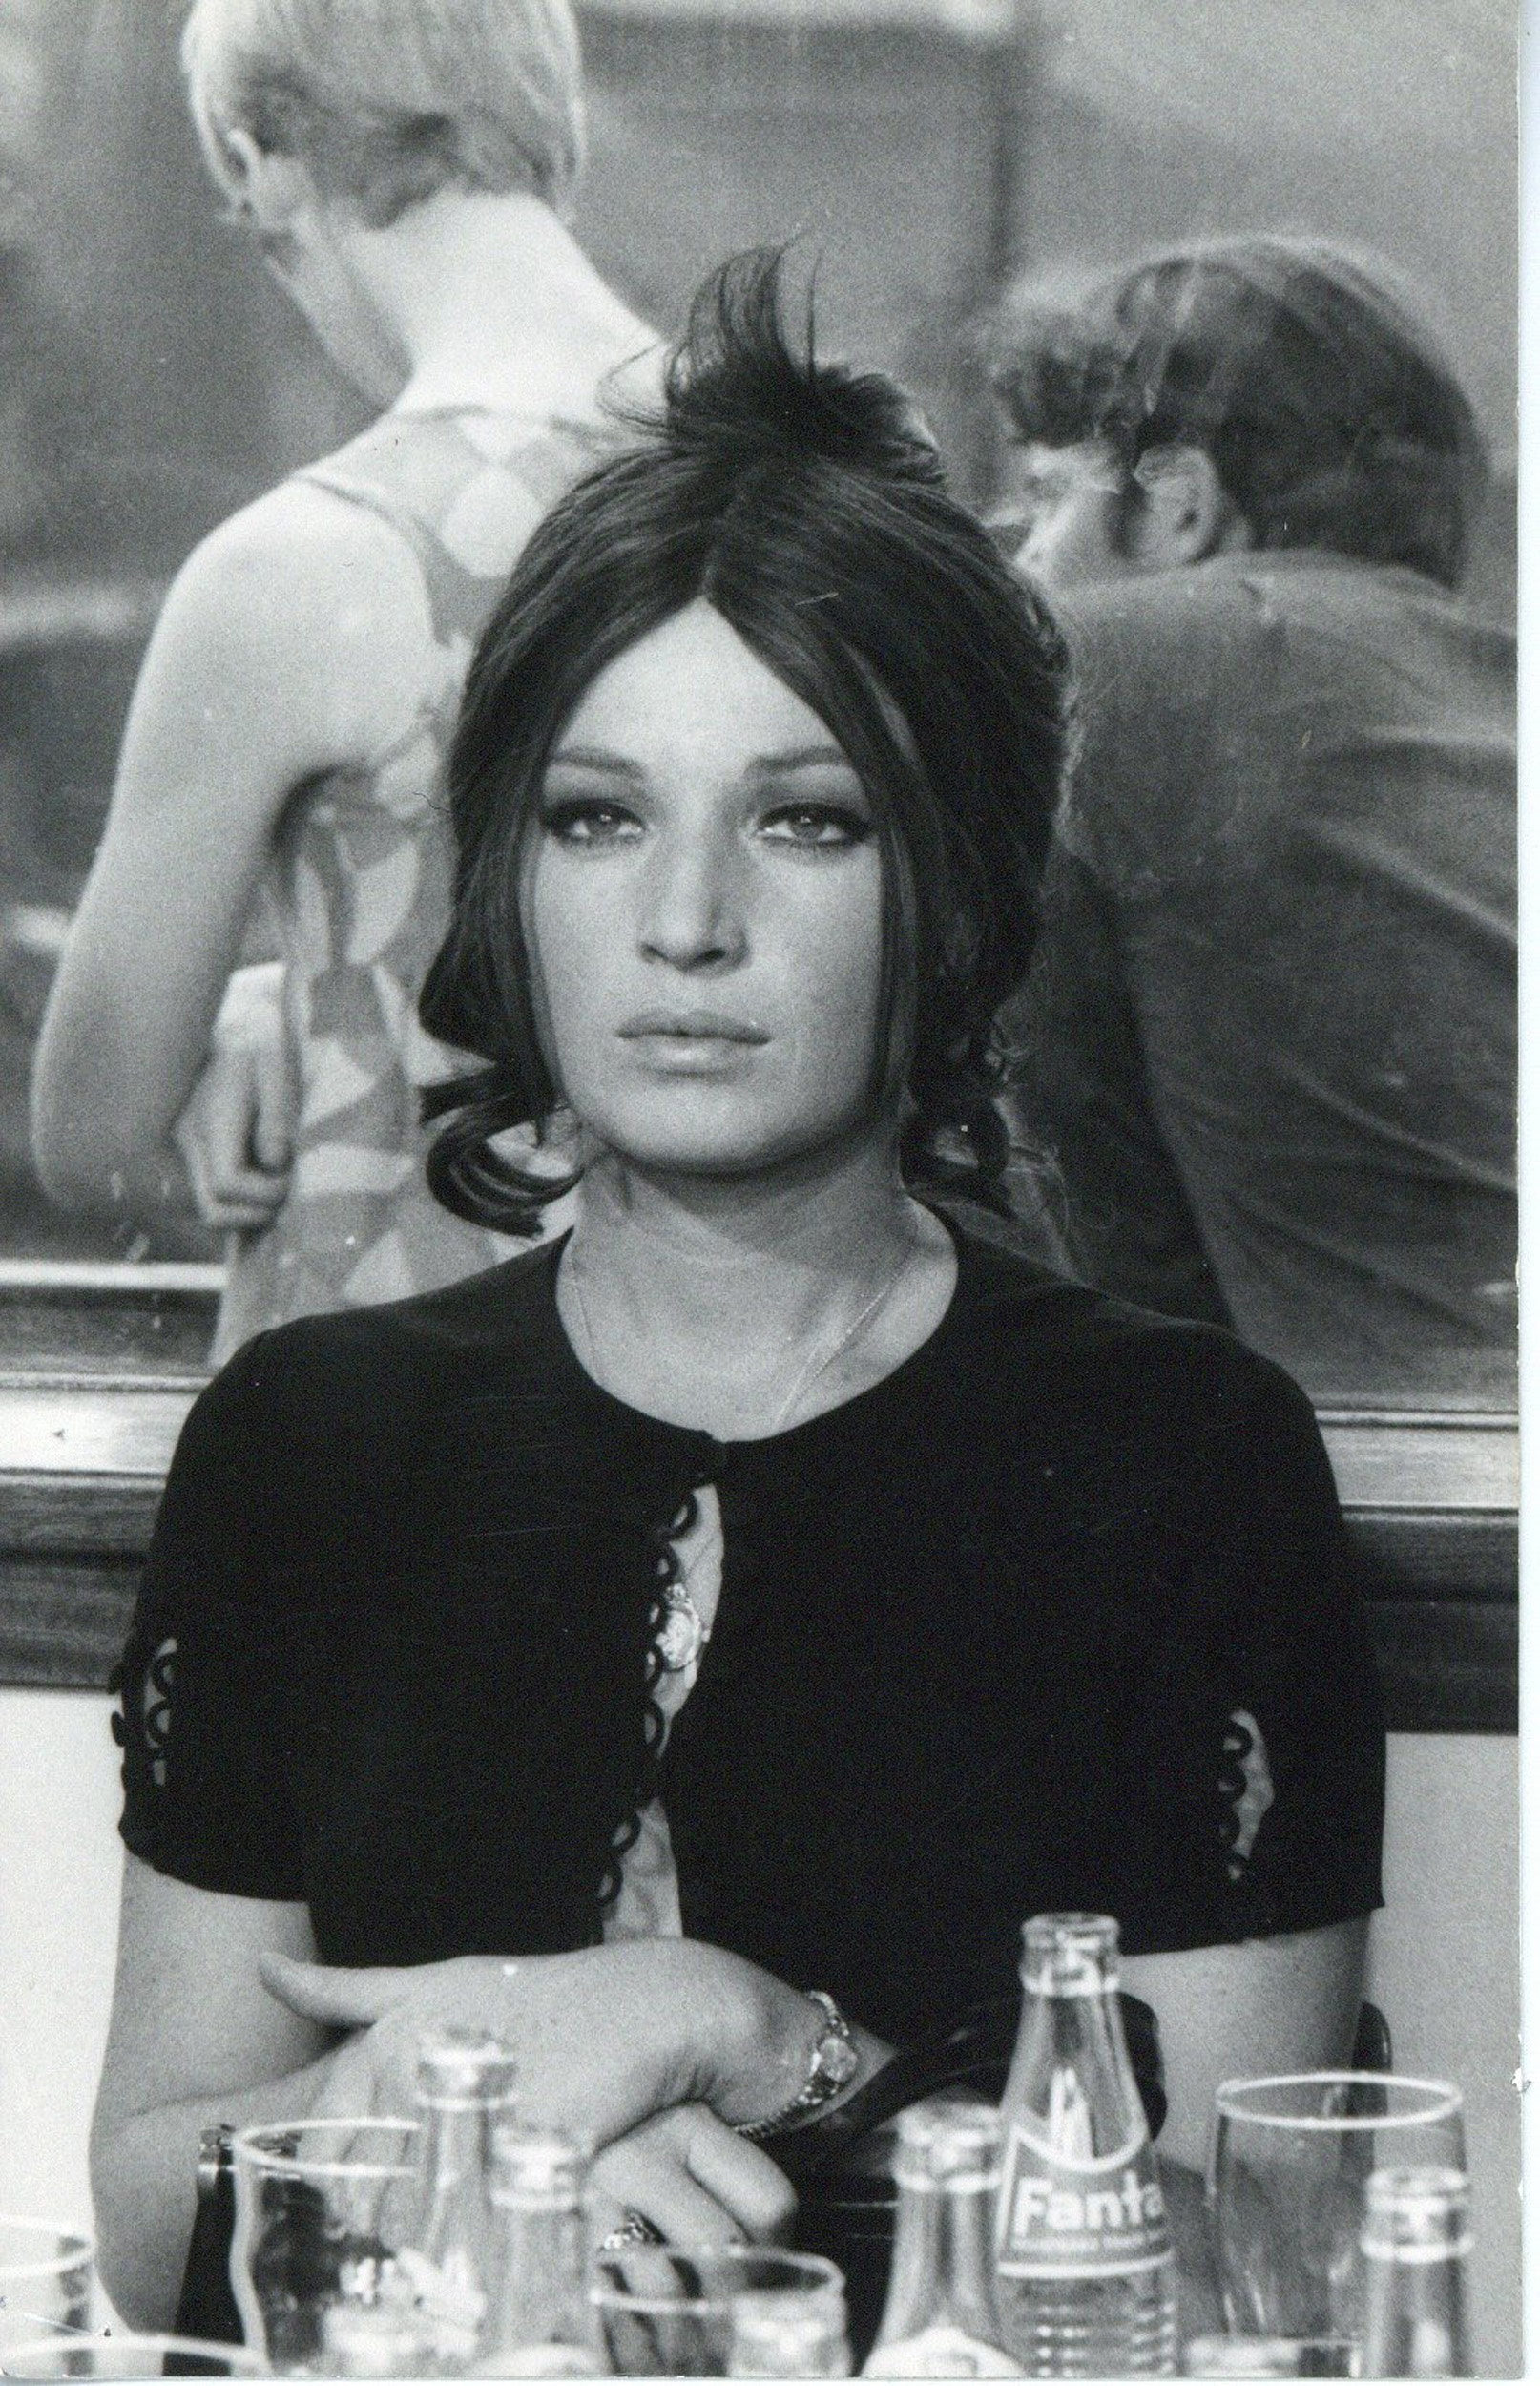 Monica Vitti nel film La ragazza con la pistola, regia di Mario Monicelli, 1968. Costumista Maurizio Chiari, 1968